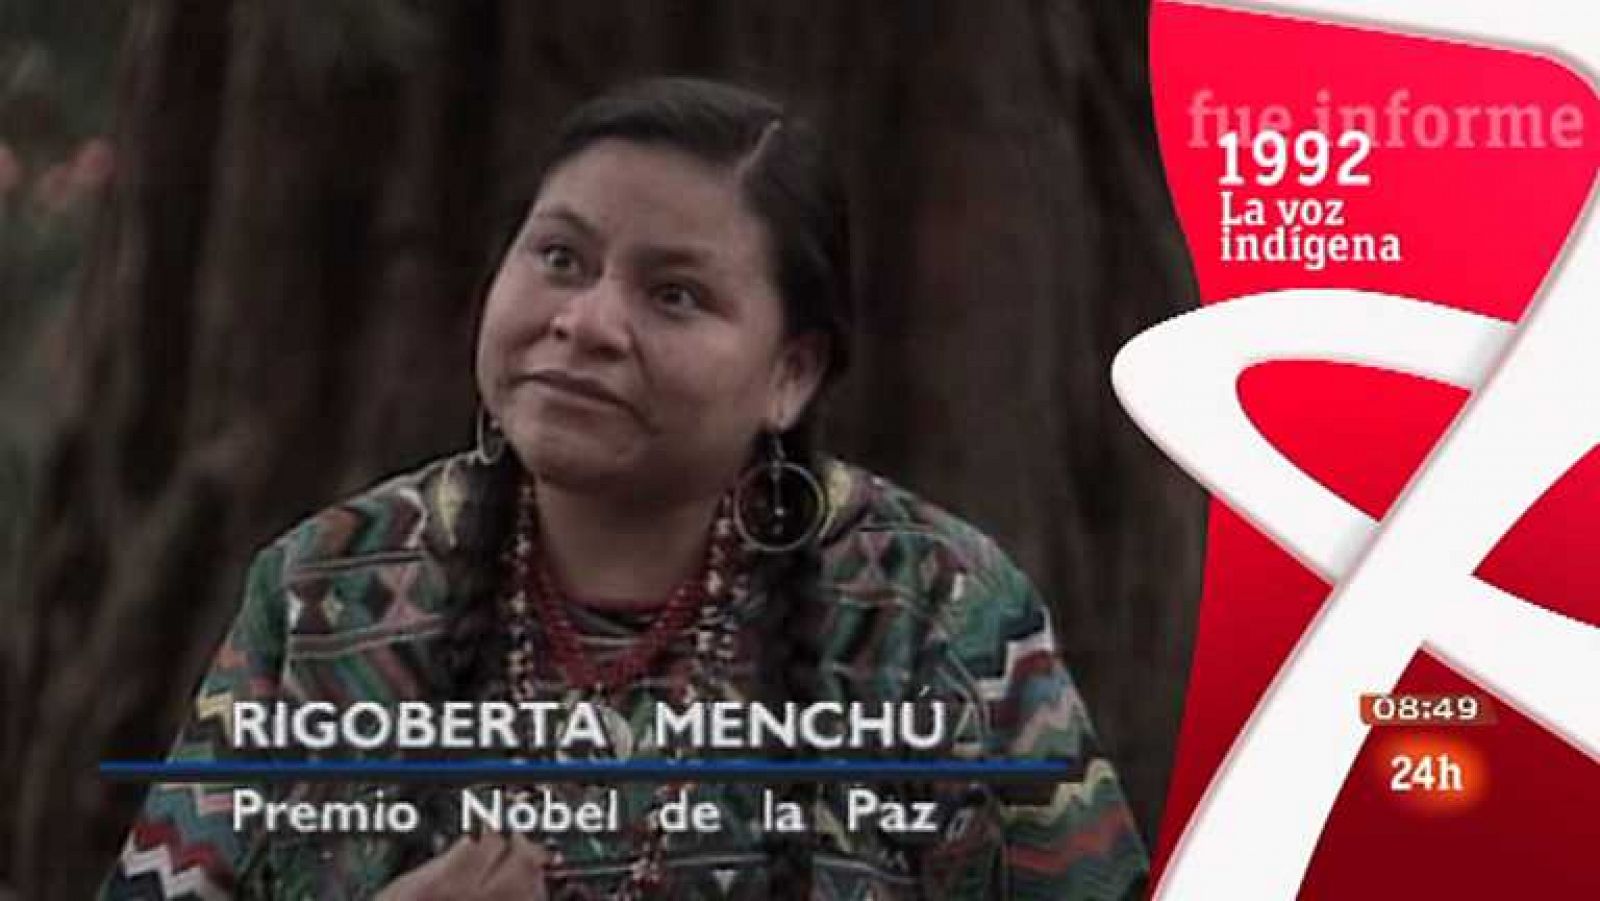 La voz indígena (Rigoberta Menchú) - Ver ahora 